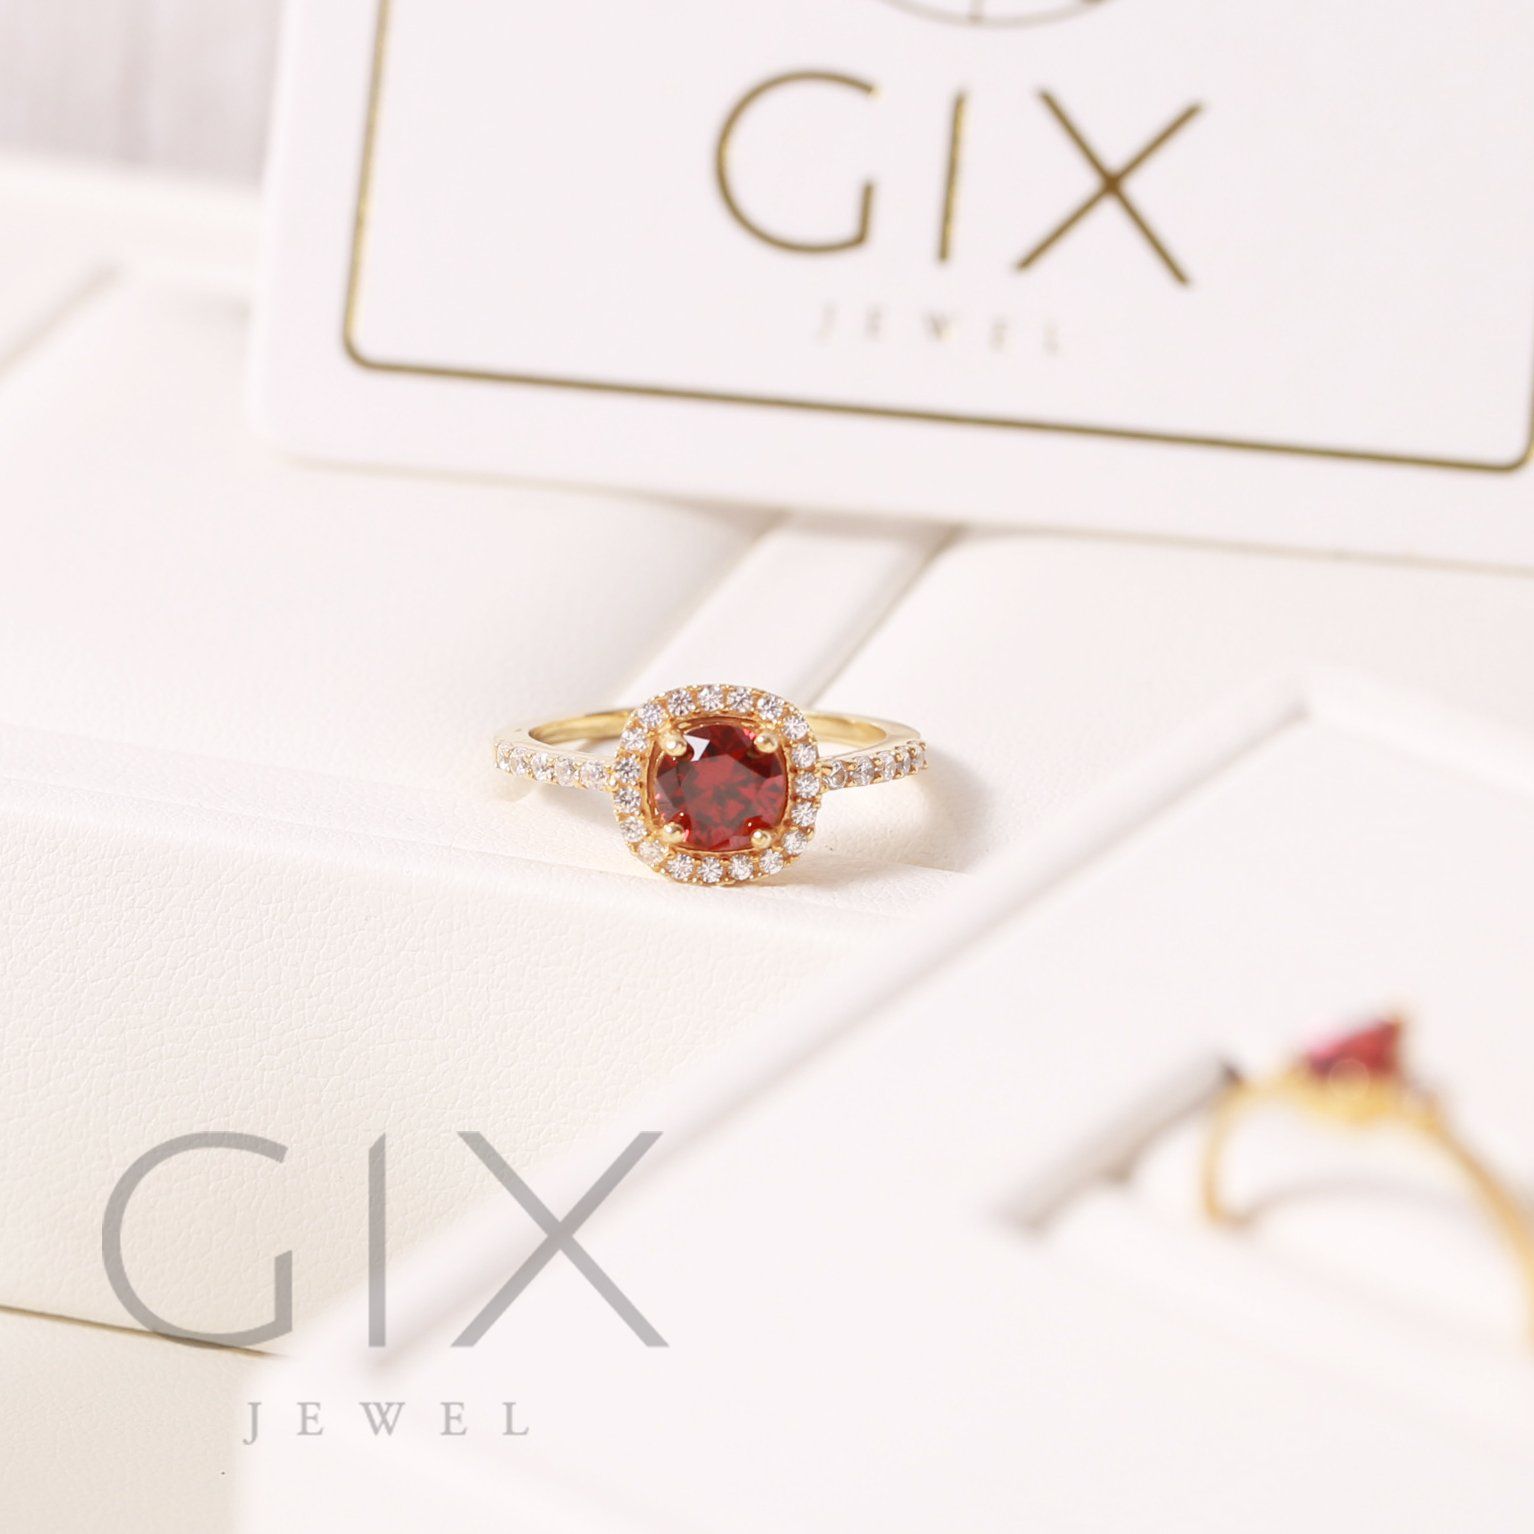  Nhẫn bạc đẹp cho nữ đính đá Cz đỏ cao cấp tphcm Gix Jewel SPGN14 